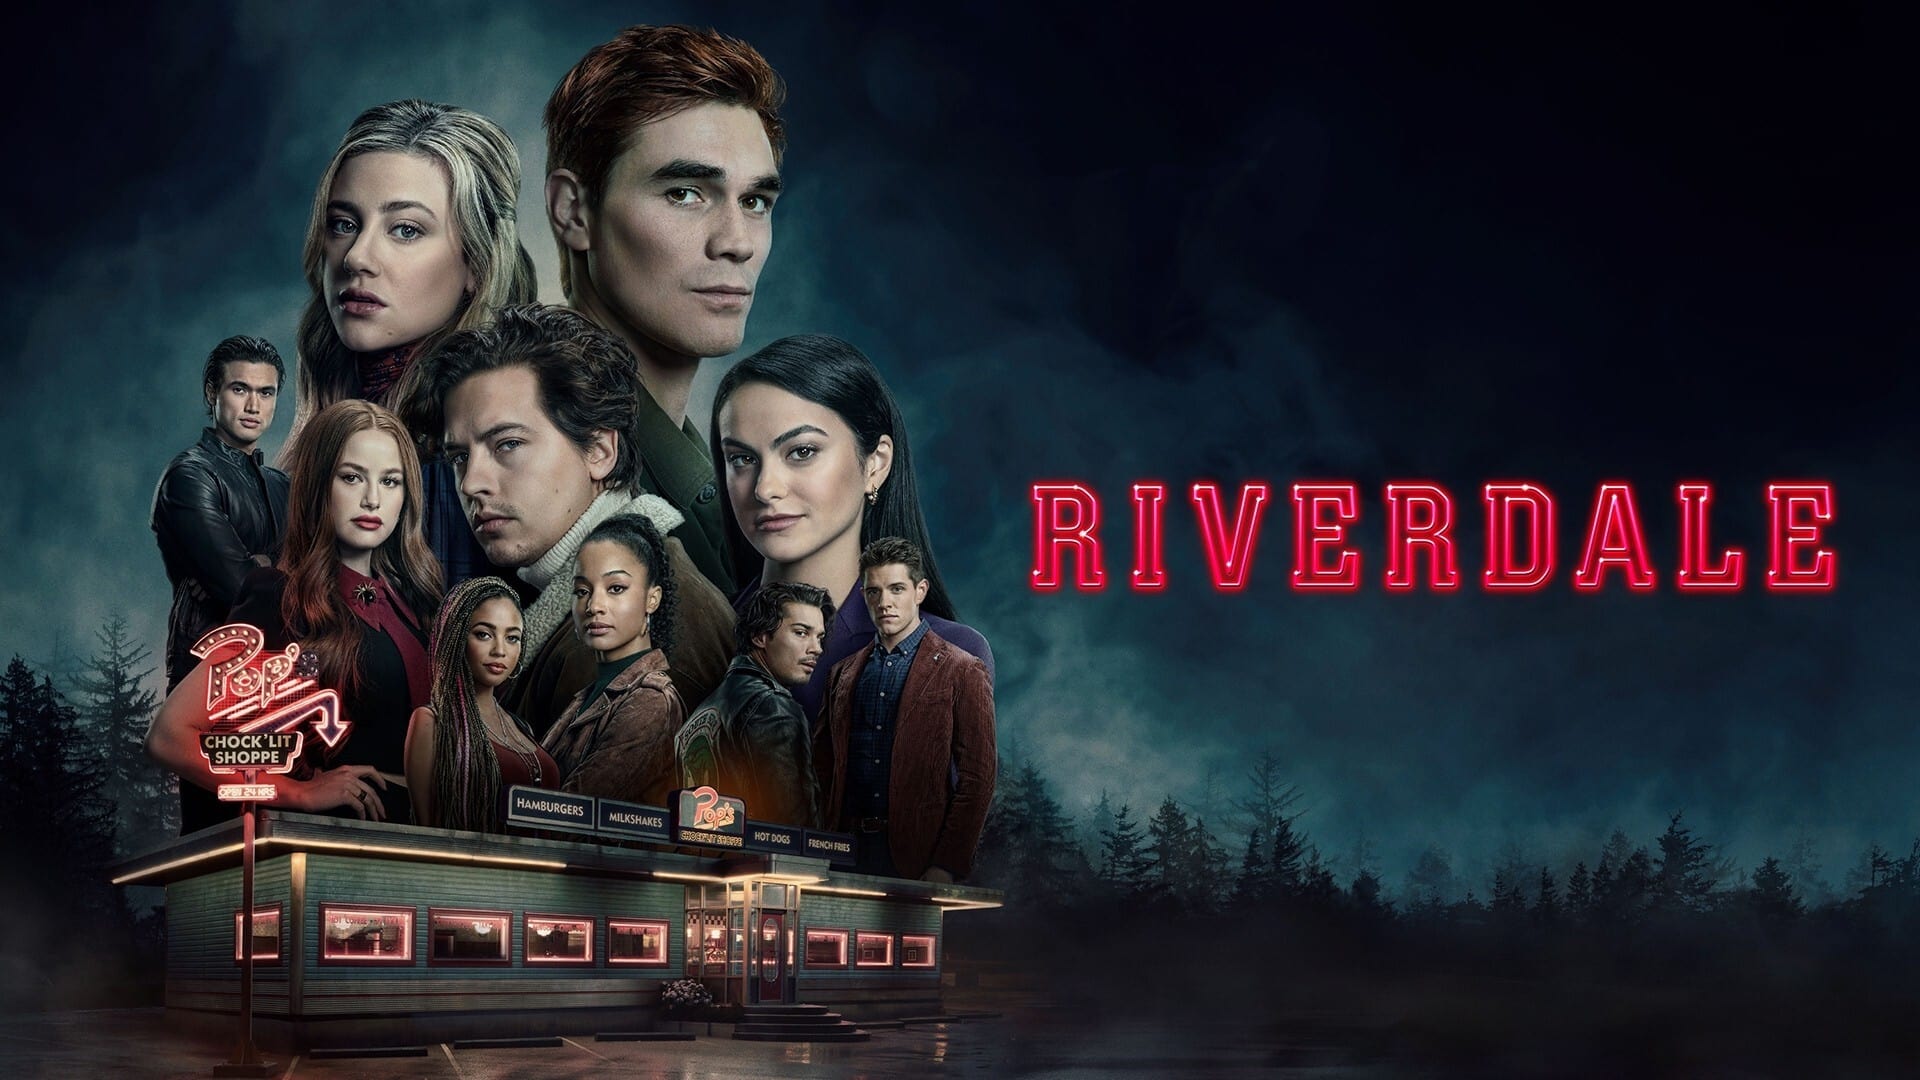 Riverdale - Season 5